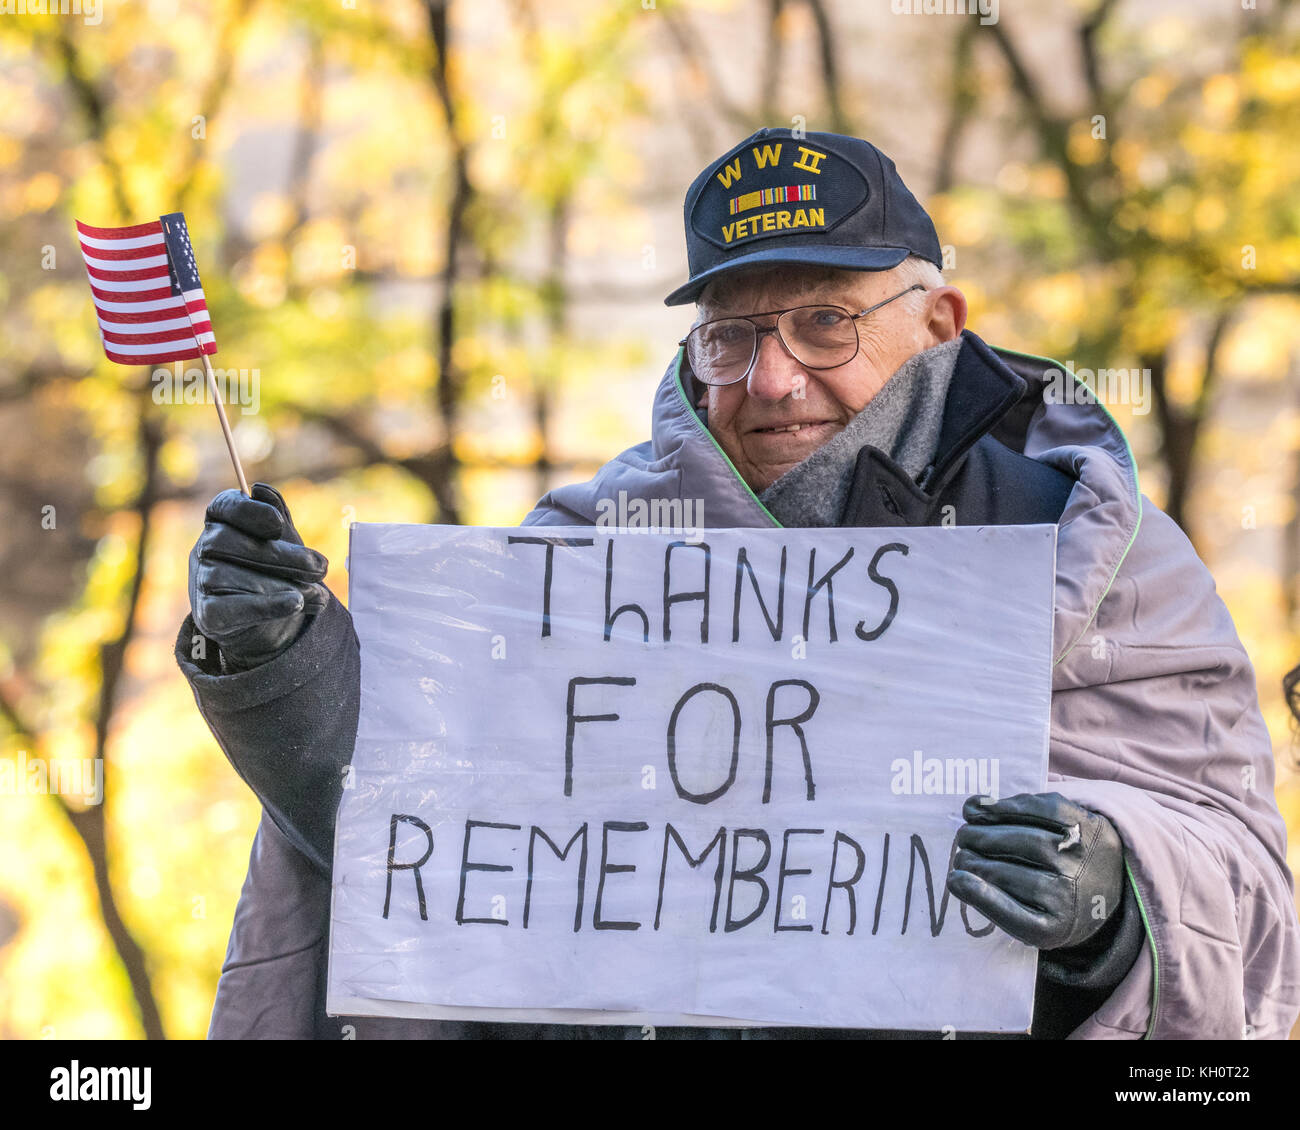 Nueva York, EEUU, 11 Nov 2017. Un veterano de la Segunda Guerra Mundial olas una bandera estadounidense como él sostiene un cartel que dice "Gracias por recordar" desde la cima de un flotador como él participa en el Desfile del Día de los Veteranos 2017. Foto por Enrique Shore/Alamy Live News Foto de stock